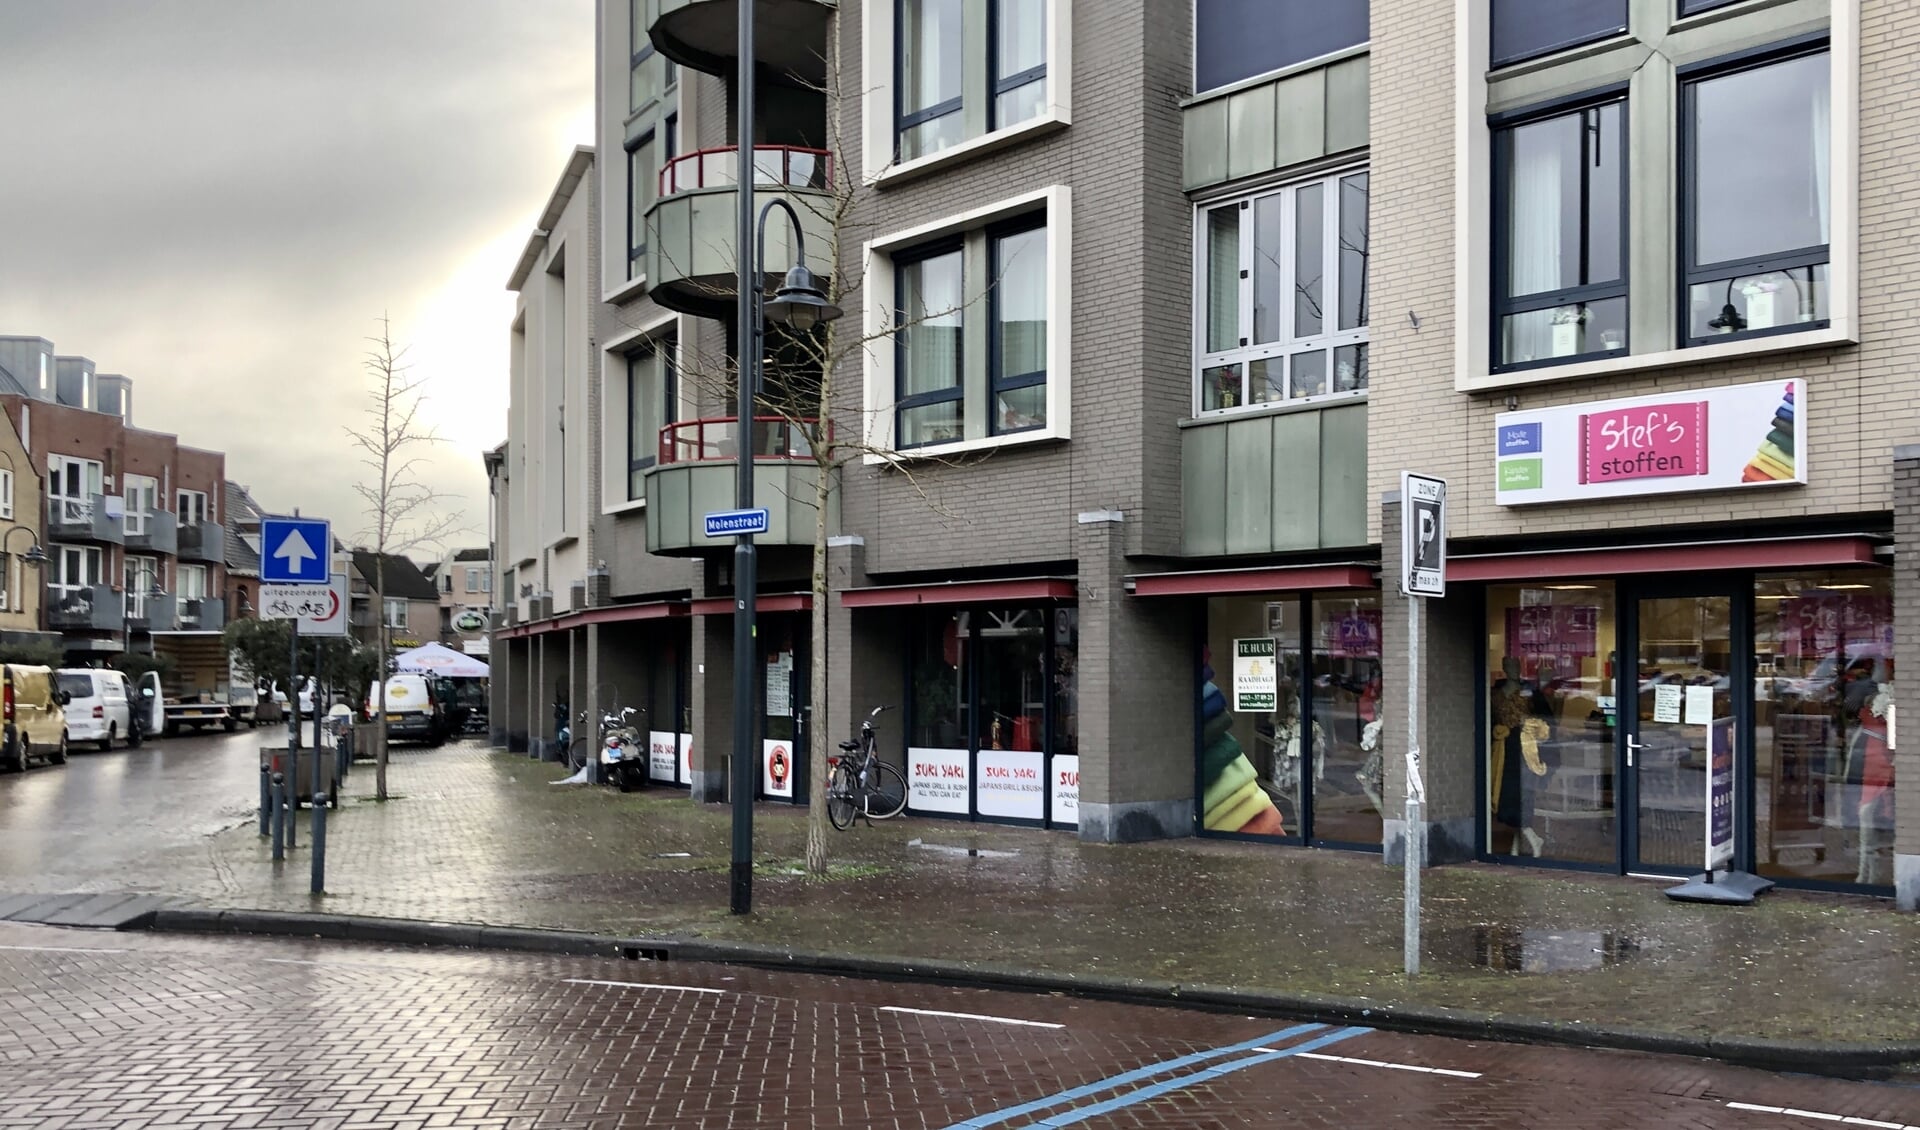 Stef's Stoffen zit in Veghel naast Suki Yaki vlakbij de kruising Meijerijstraat en Molenstraat.